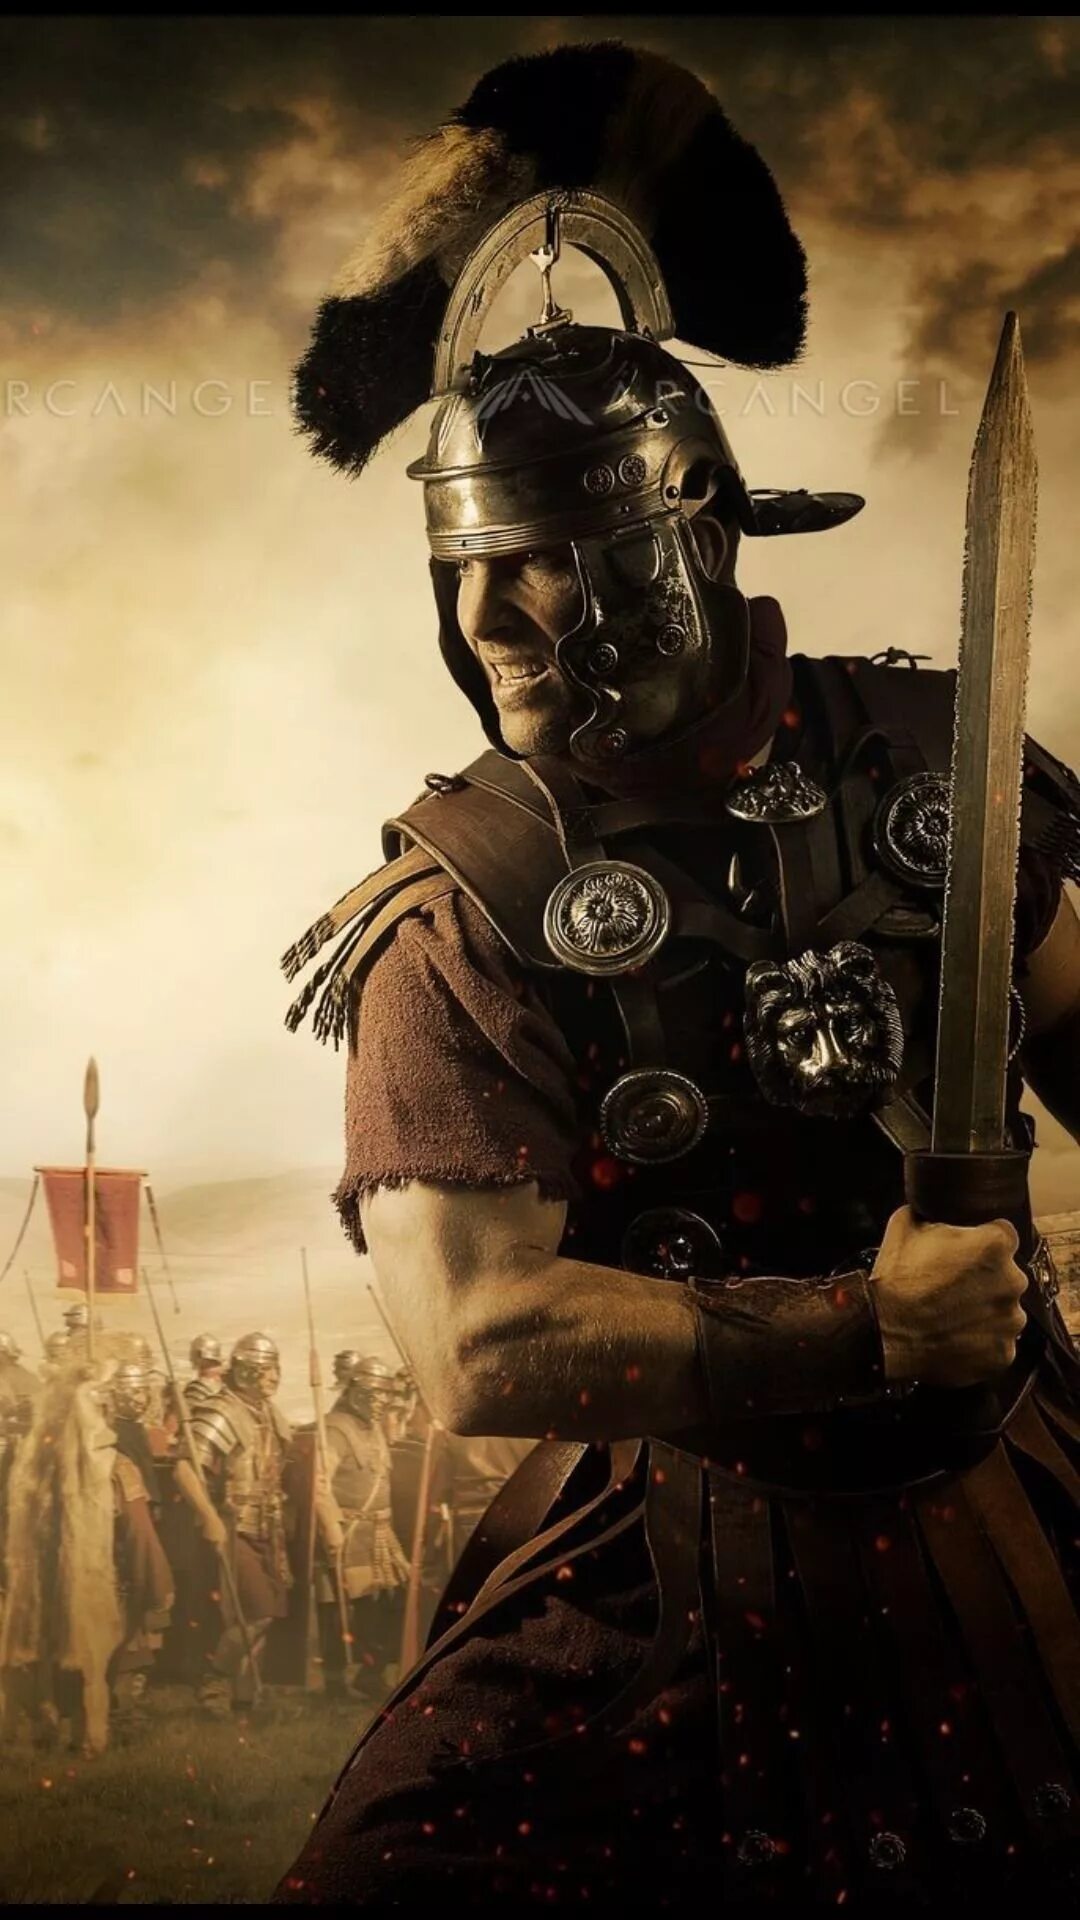 Римский воин Центурион. Римский легионер Центурион. Римский воин Гладиатор. Центурион Римского легиона. Римский воин легионер